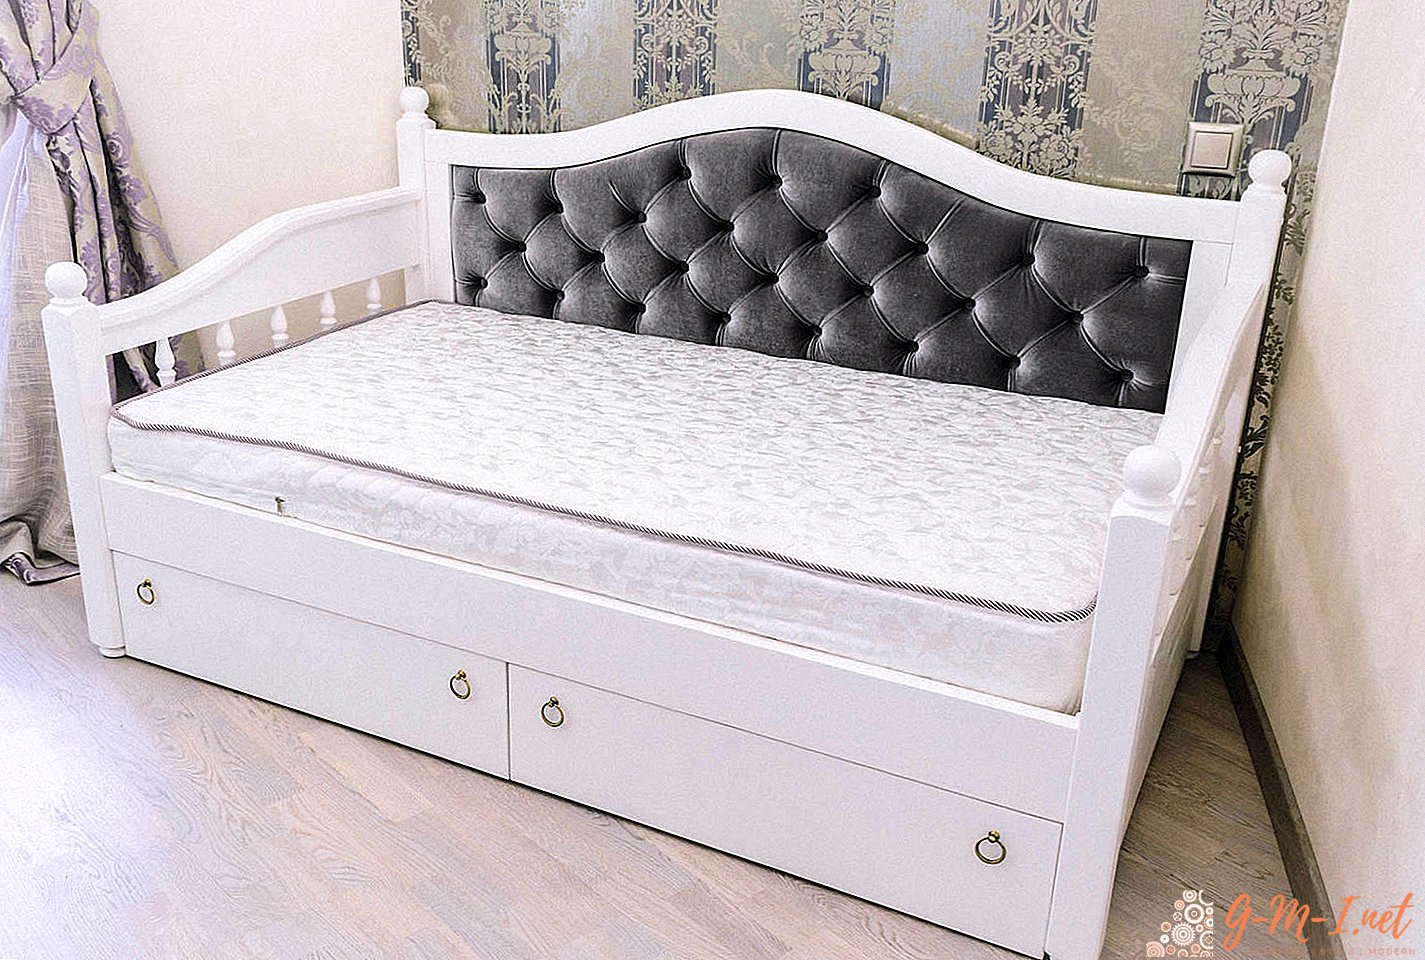 Was ist der Unterschied zwischen einer Ottomane und einem Bett?